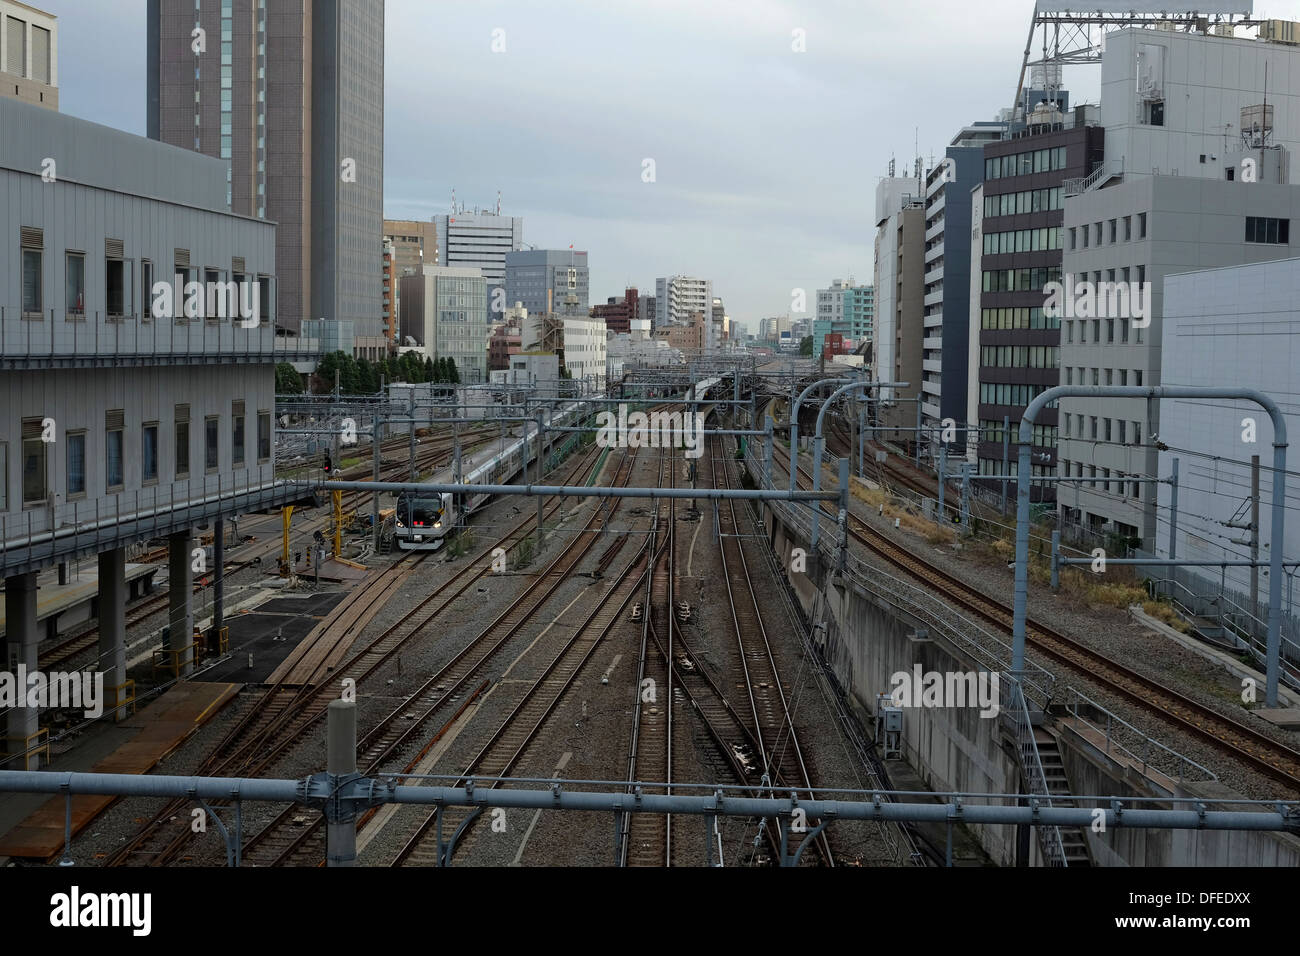 JR binari ferroviari la stazione di Shinjuku Foto Stock